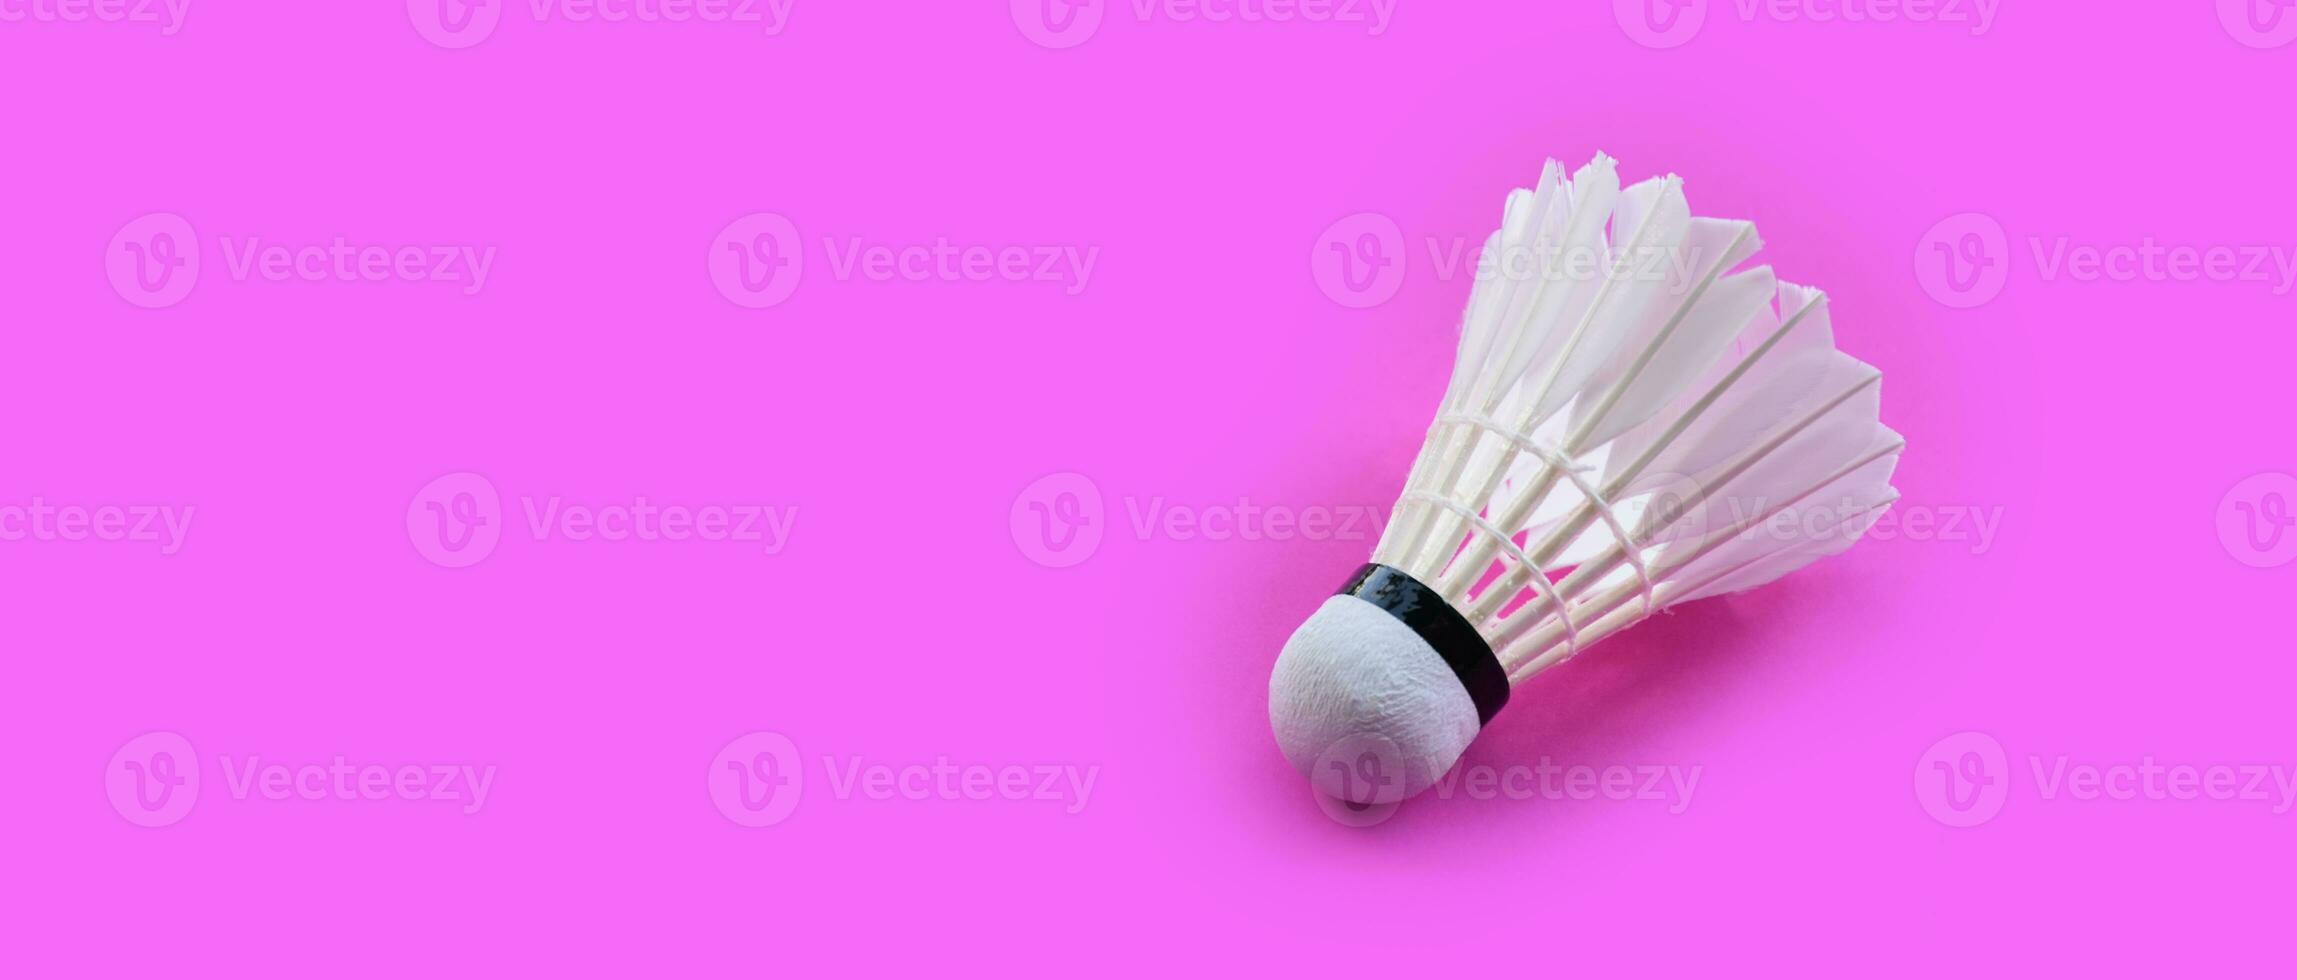 volant de badminton blanc crème et raquette au sol dans un terrain de badminton intérieur, espace de copie, mise au point douce et sélective sur les volants. photo